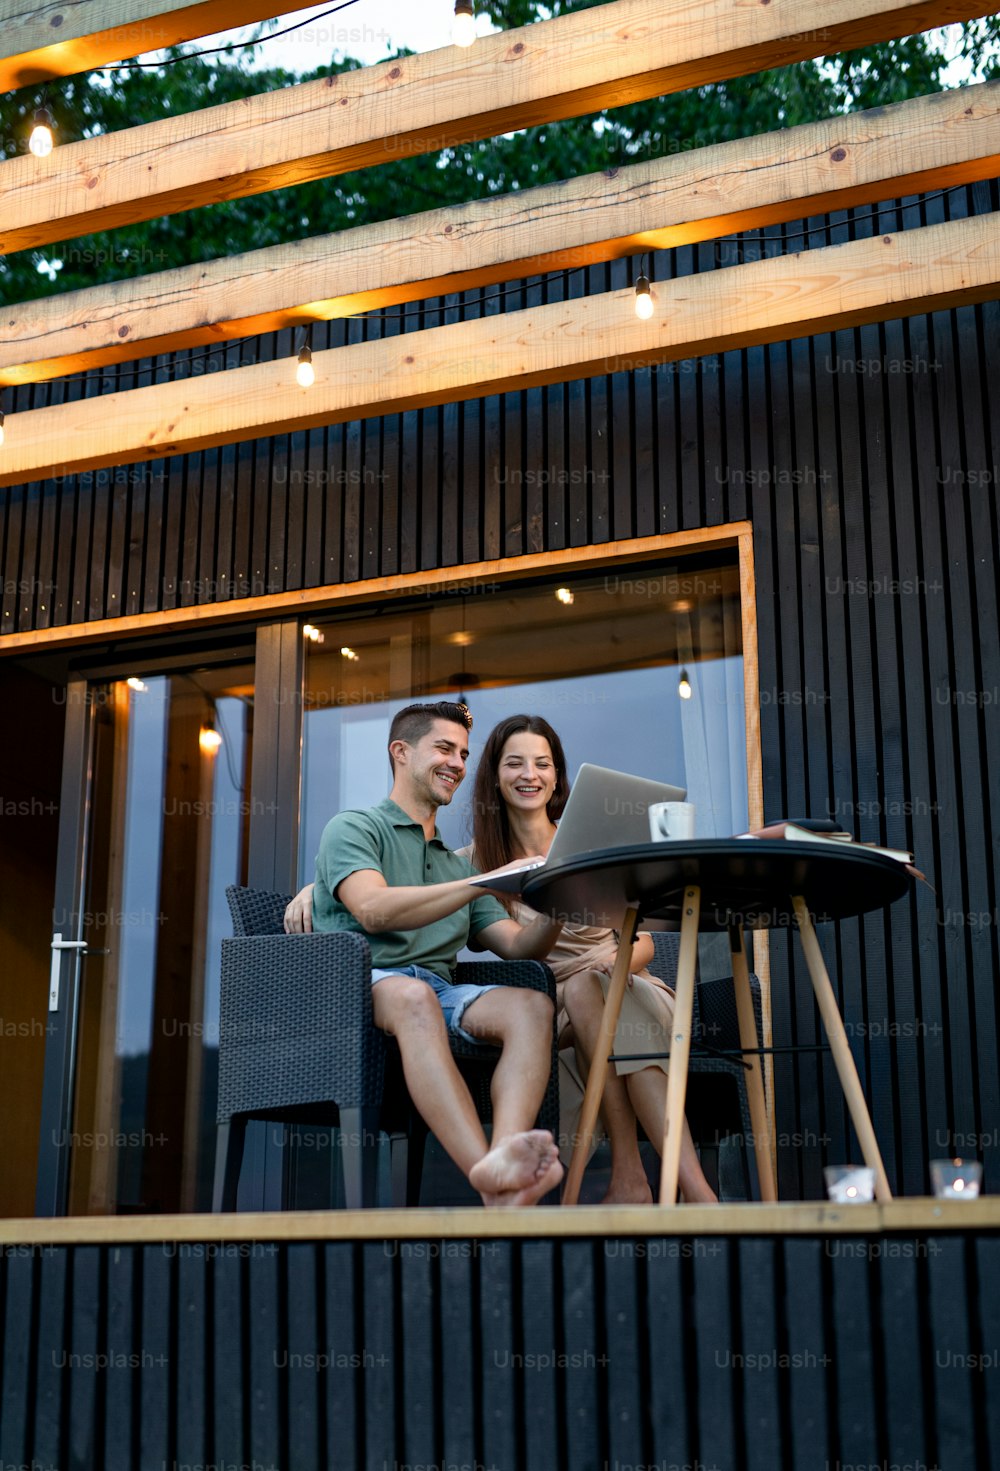 Giovane coppia con laptop seduta all'aperto, fine settimana in una casa container in campagna.